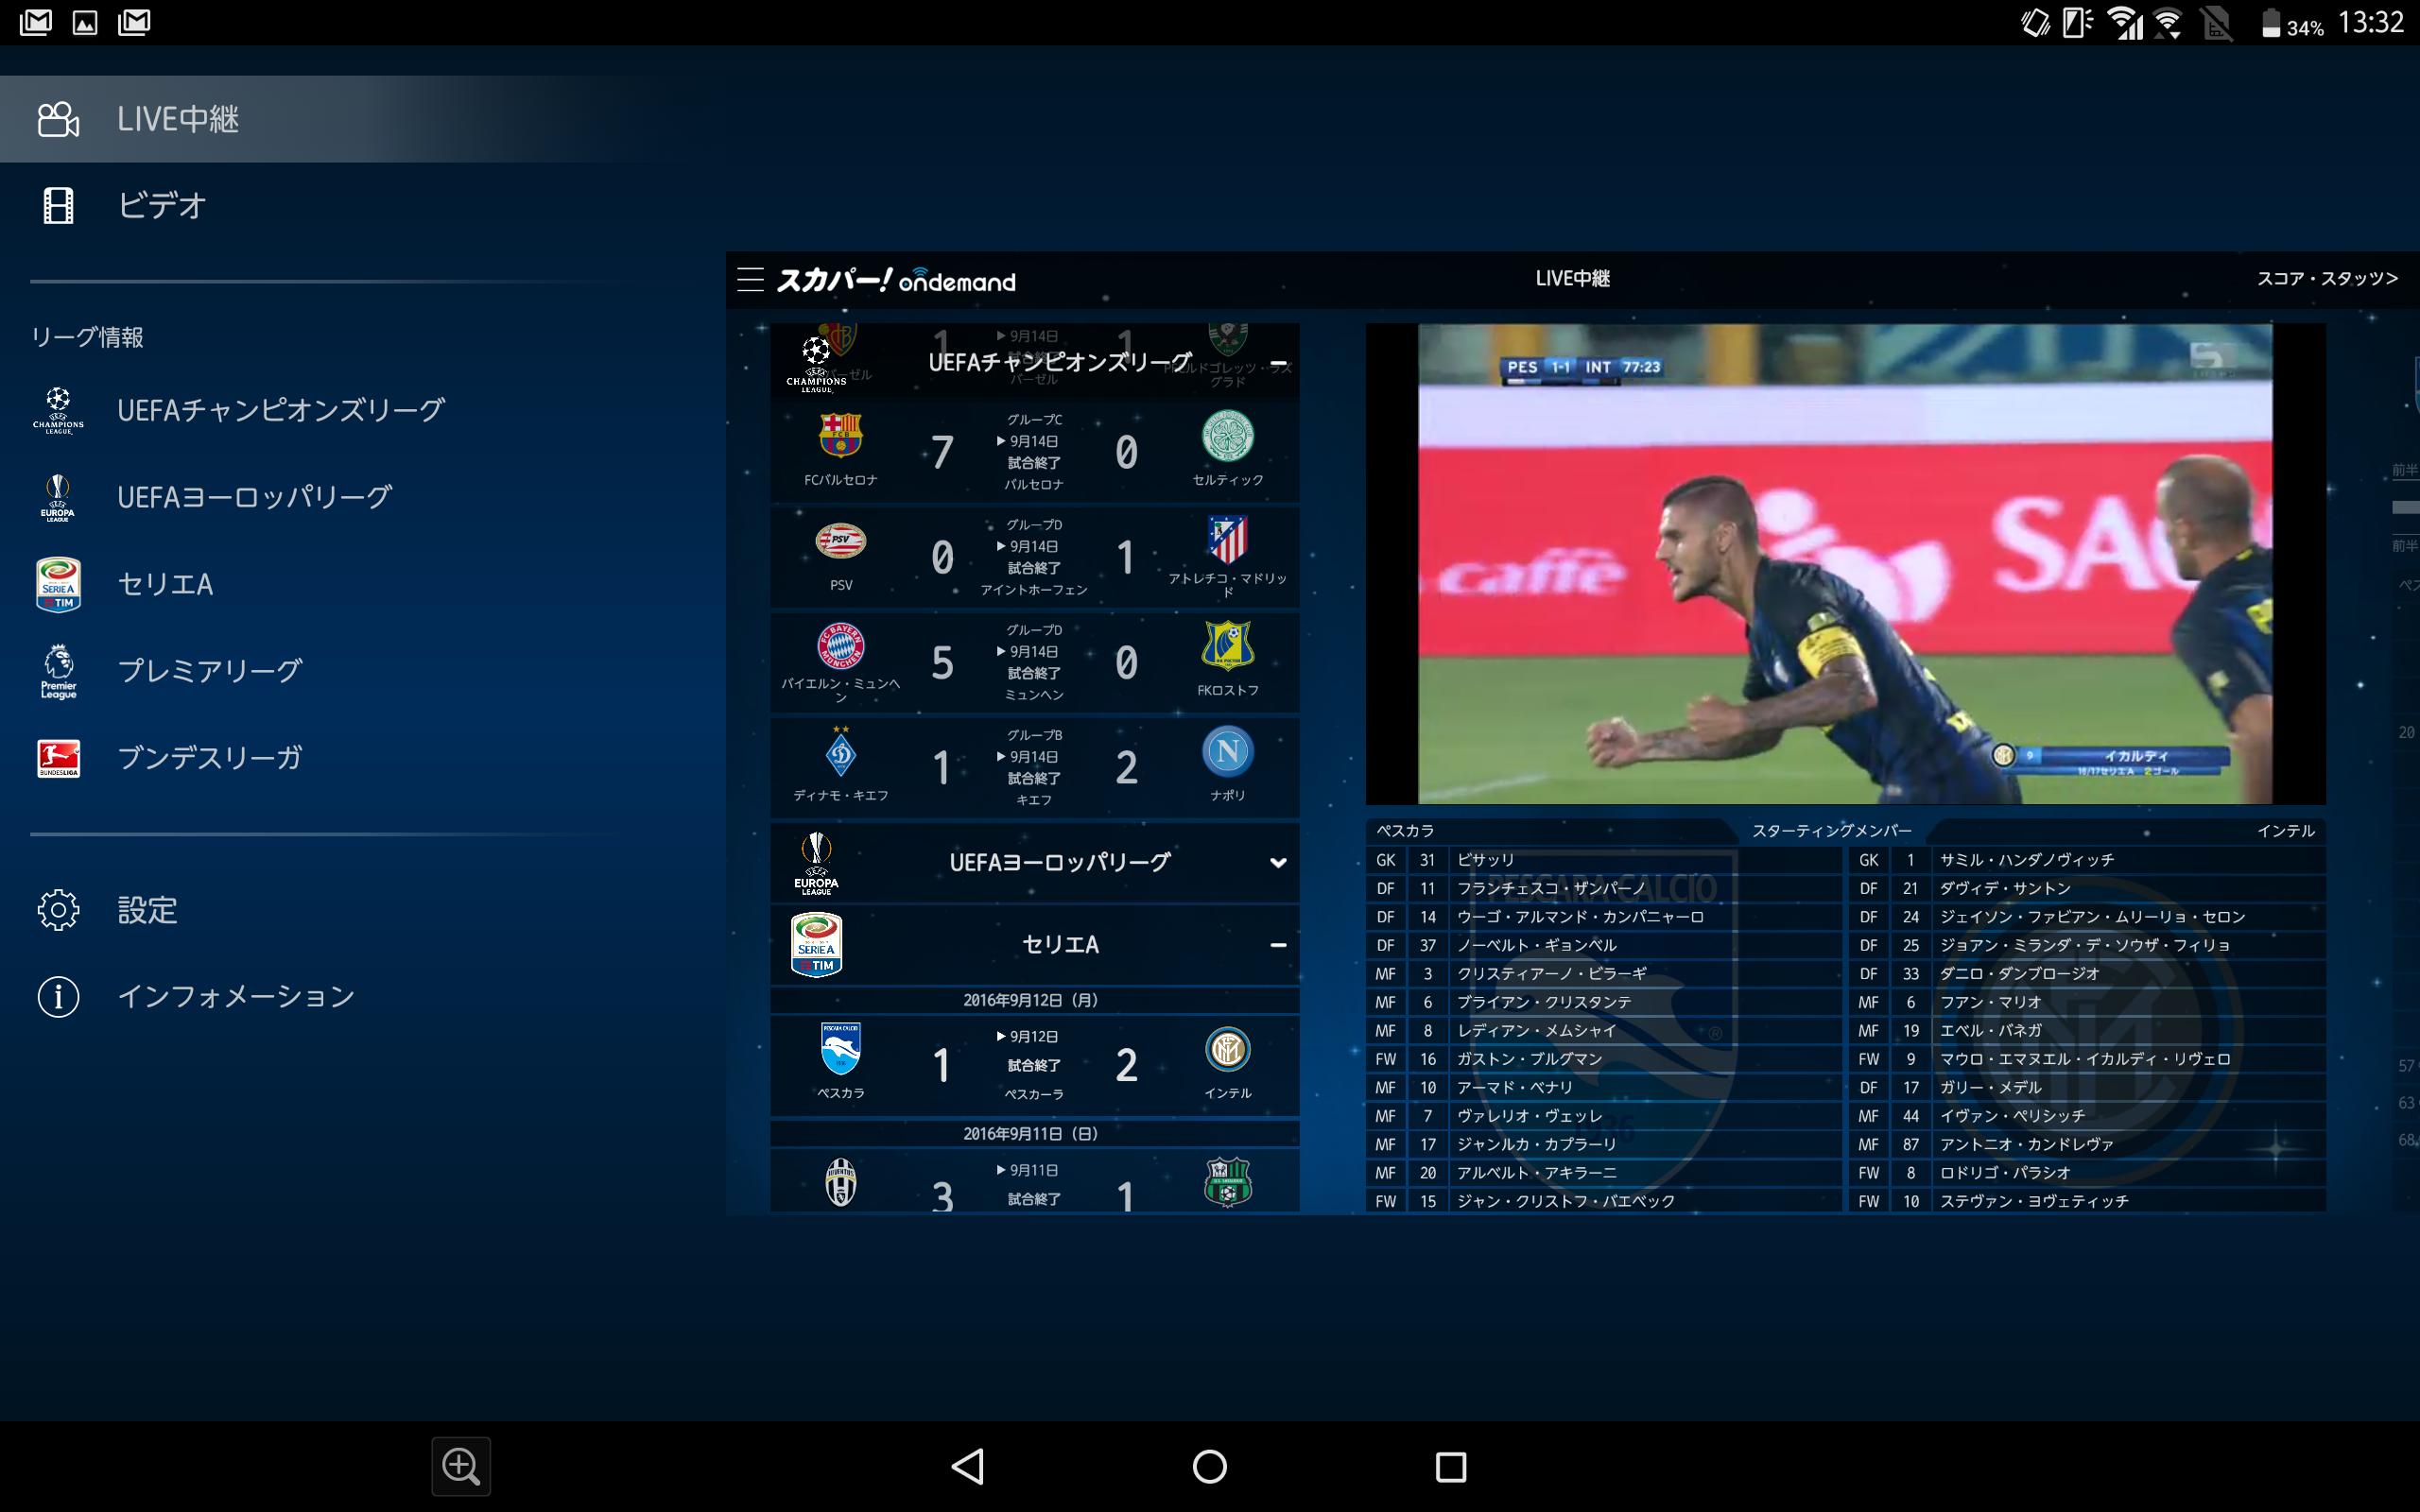 スカパー 欧州サッカーオンデマンド For Android Apk Download